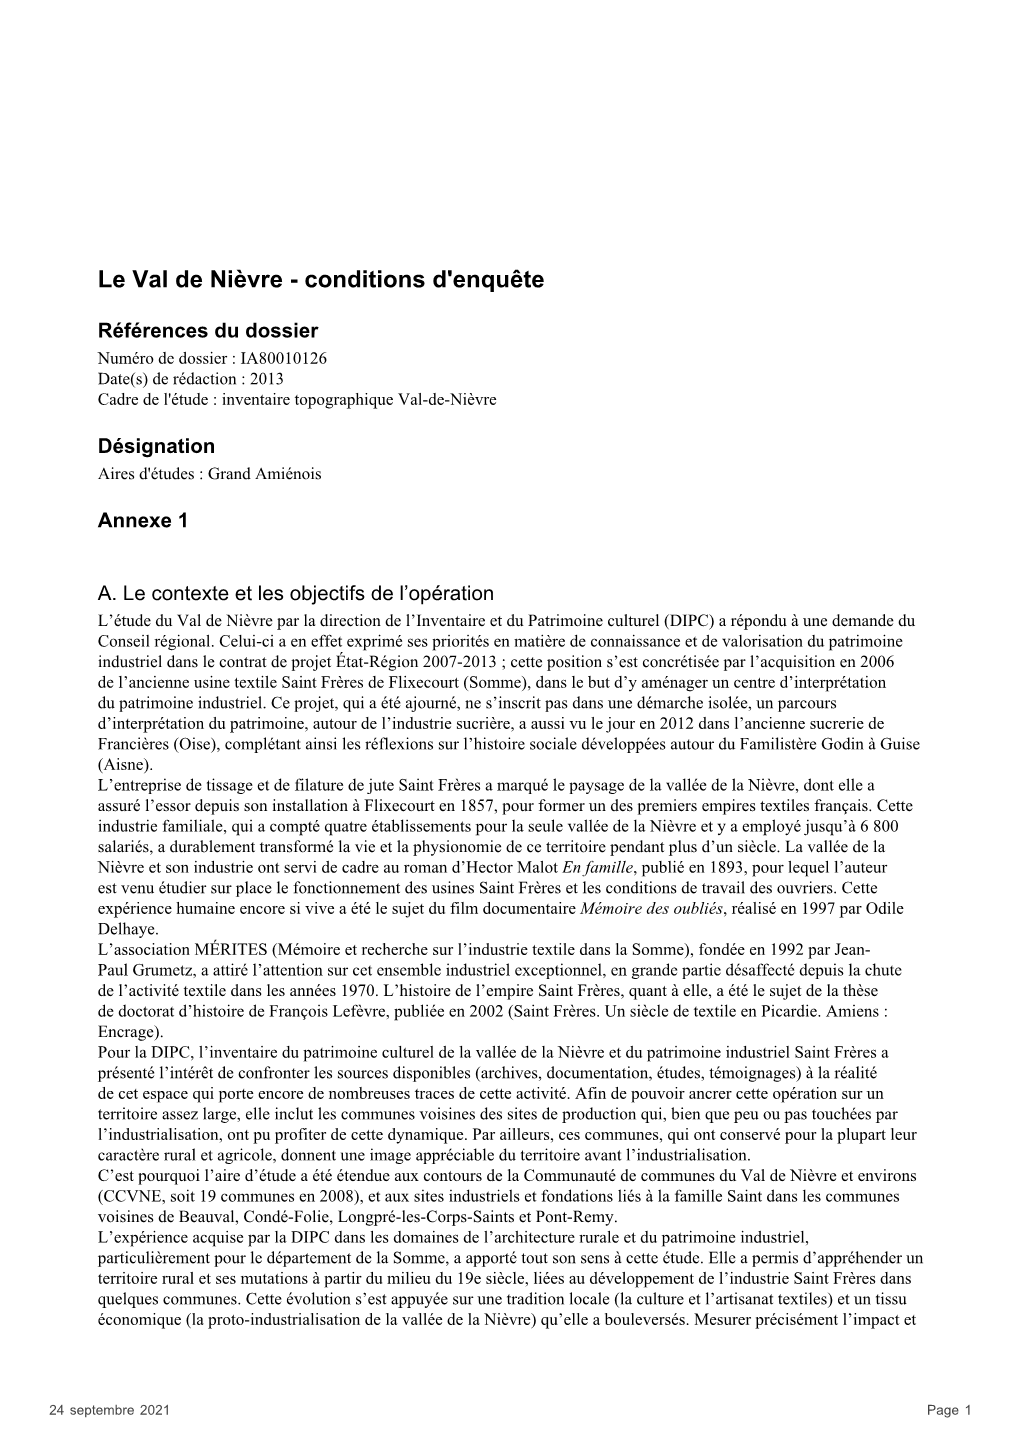 Le Val De Nièvre - Conditions D'enquête